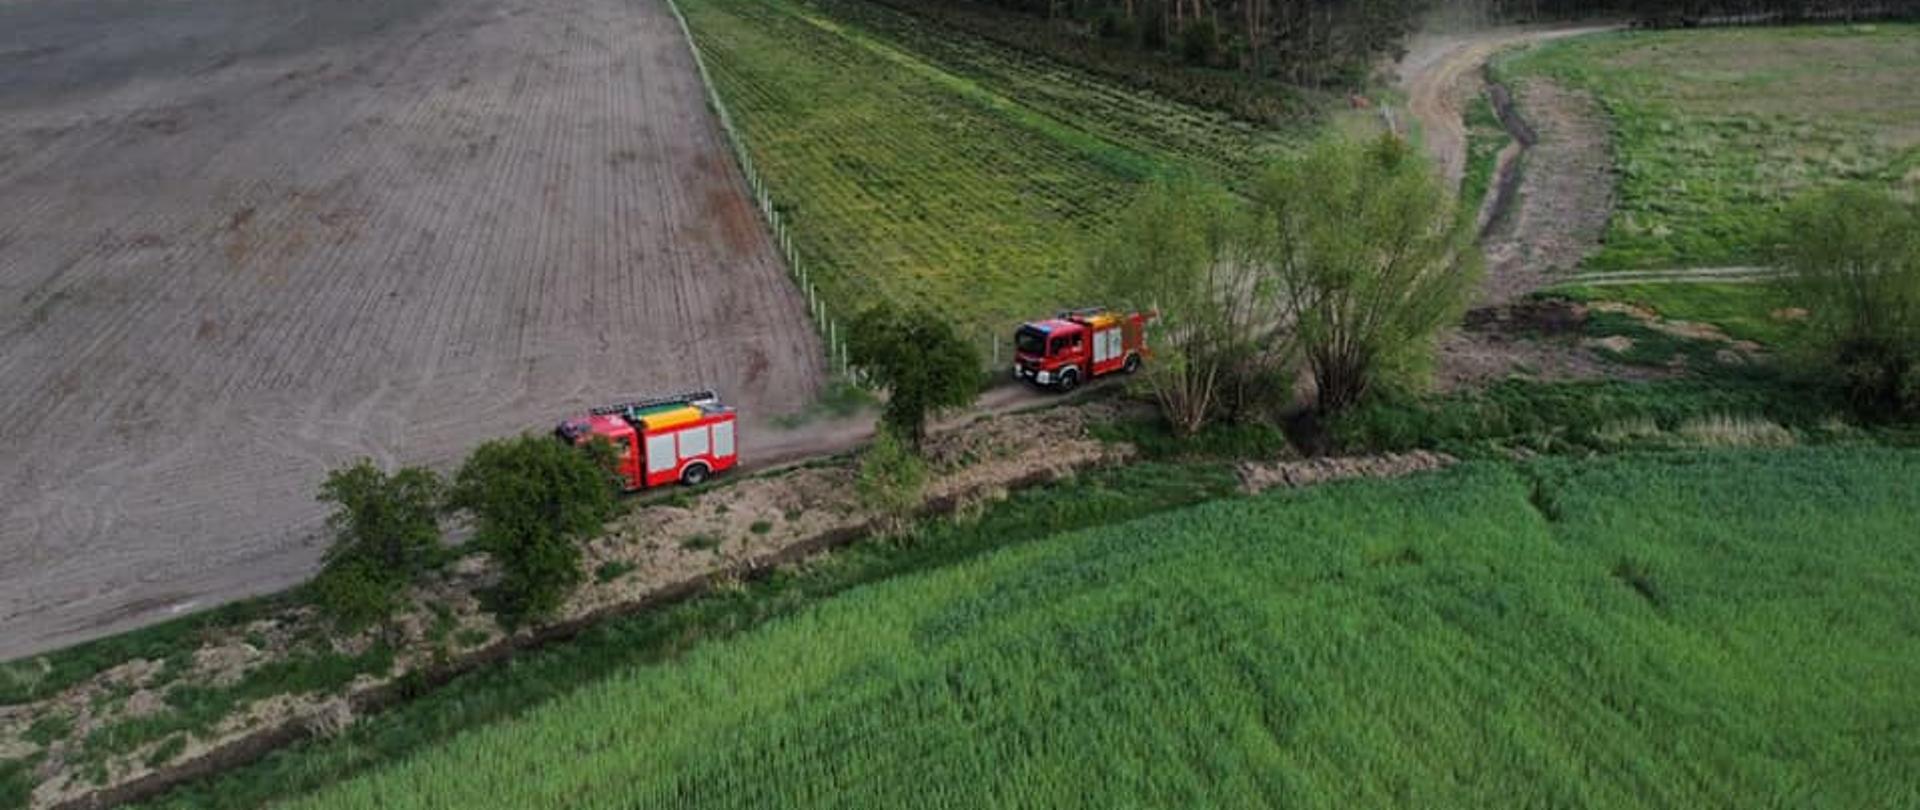 Zdjęcie z lotu ptaka, przedstawia pojazdy pożarnicze stojące na polnej drodze.